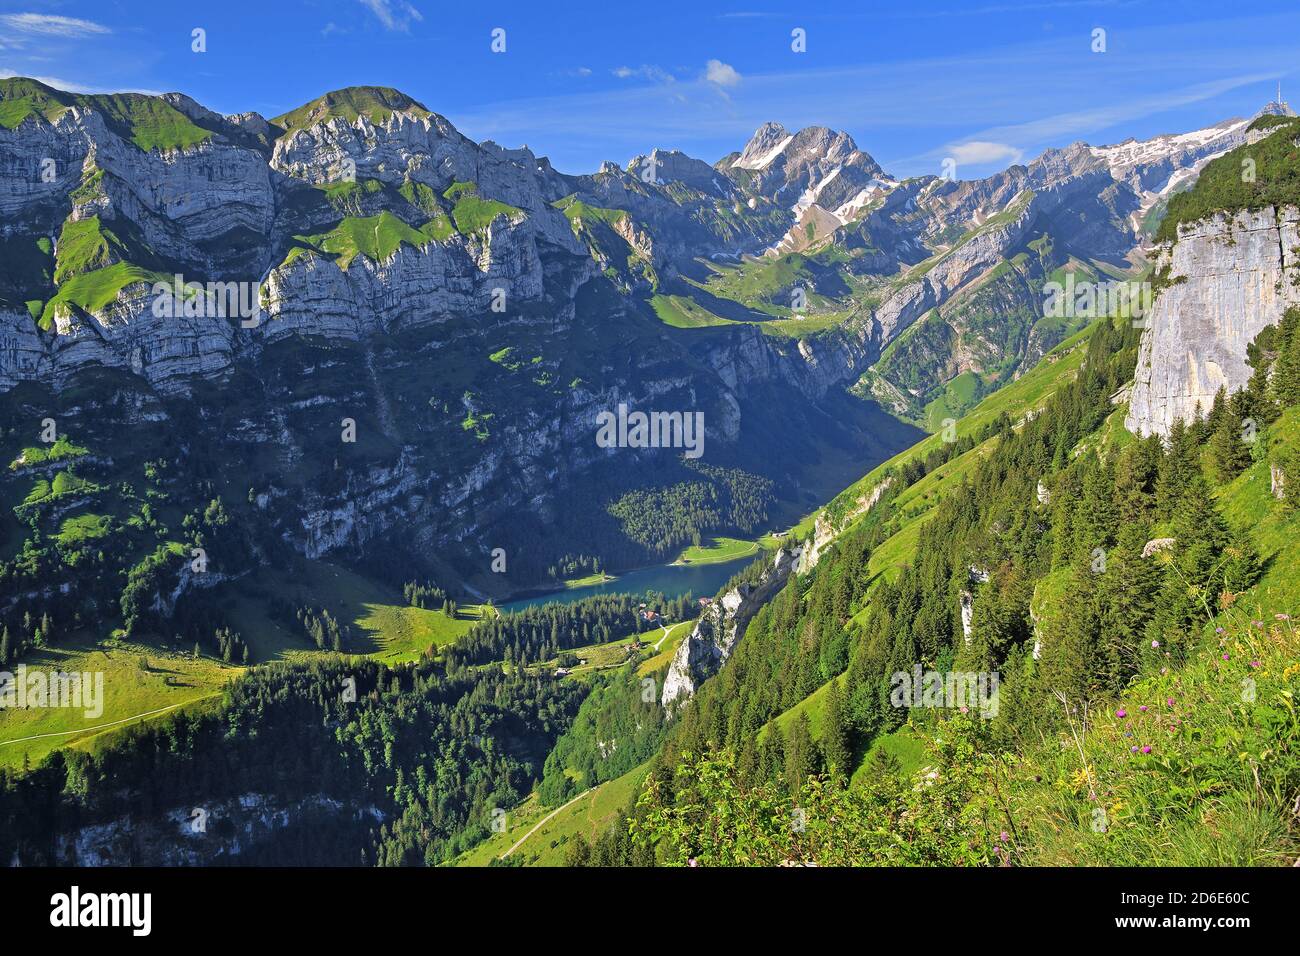 Alpsteingebirge with Seealpsee, Wasserauen, Appenzell Alps, Appenzeller Land, Canton Appenzell-Innerrhoden, Switzerland Stock Photo